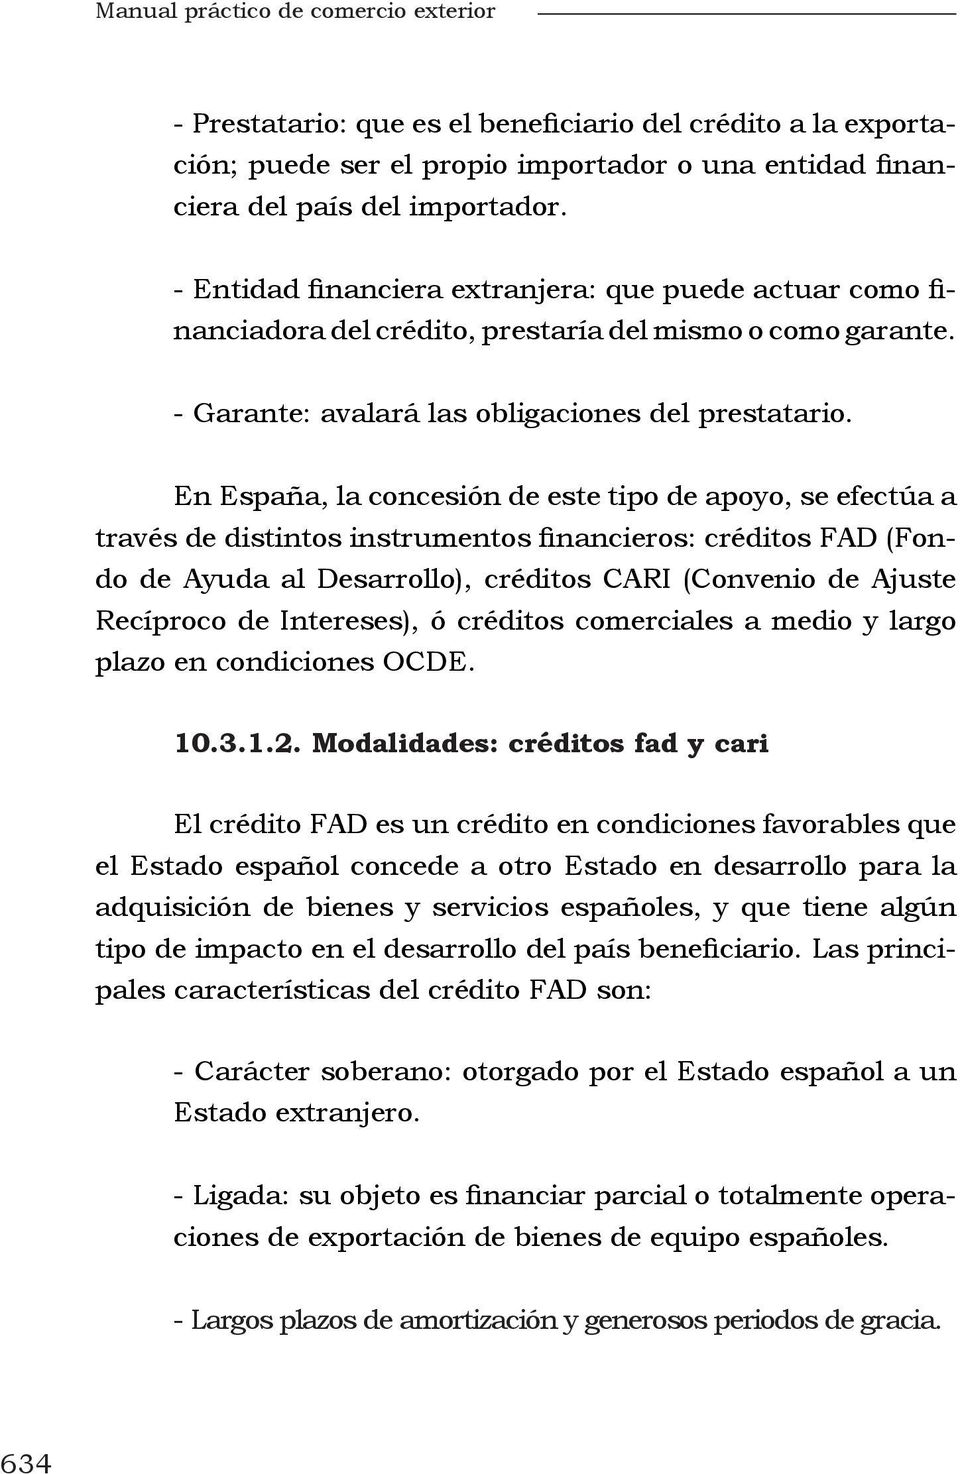 En España, la concesión de este tipo de apoyo, se efectúa a través de distintos instrumentos financieros: créditos FAD (Fondo de Ayuda al Desarrollo), créditos CARI (Convenio de Ajuste Recíproco de